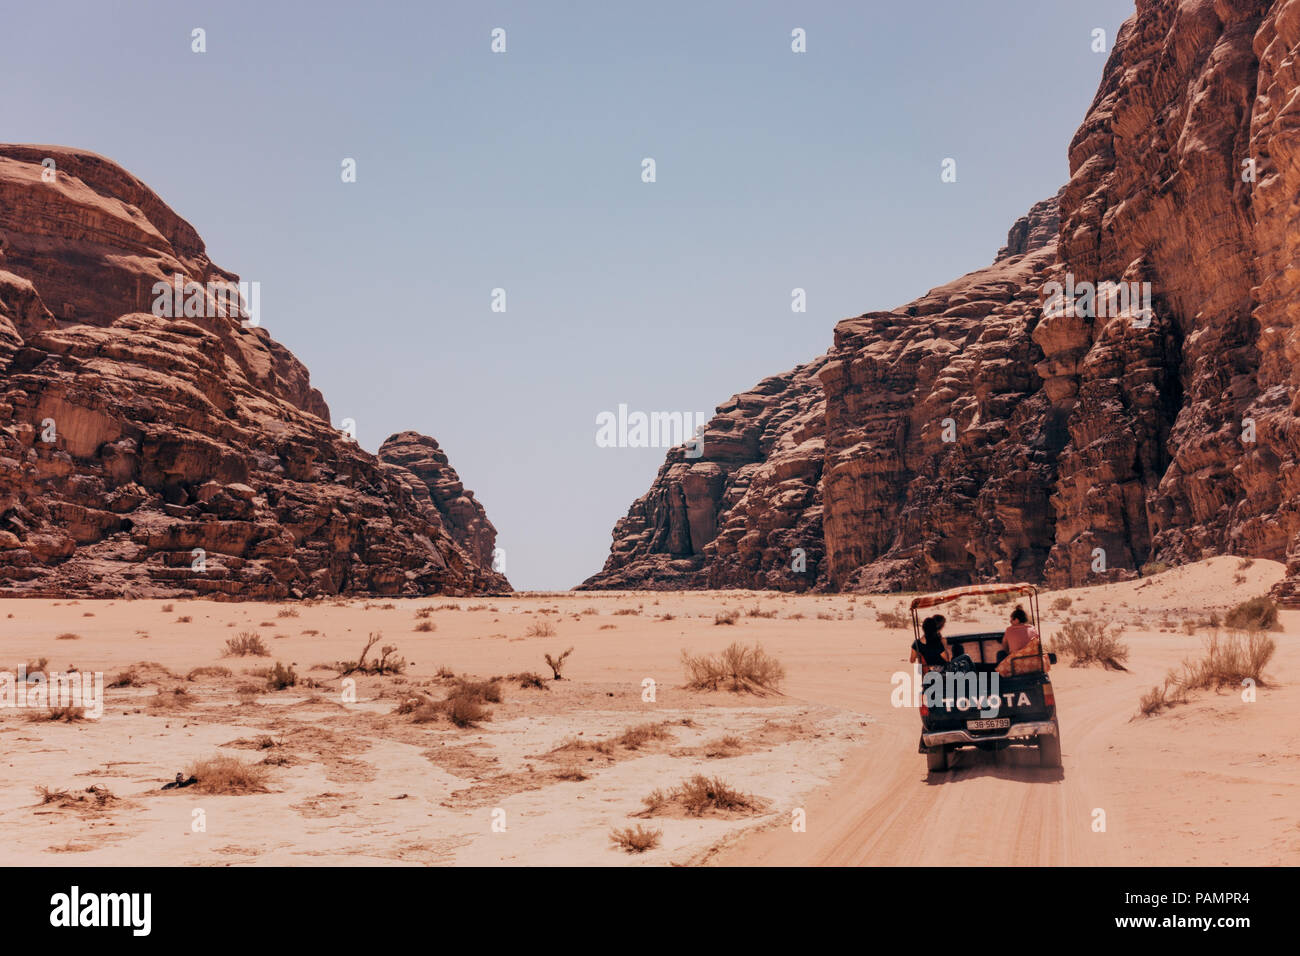 Famoso wadi immagini e fotografie stock ad alta risoluzione - Alamy